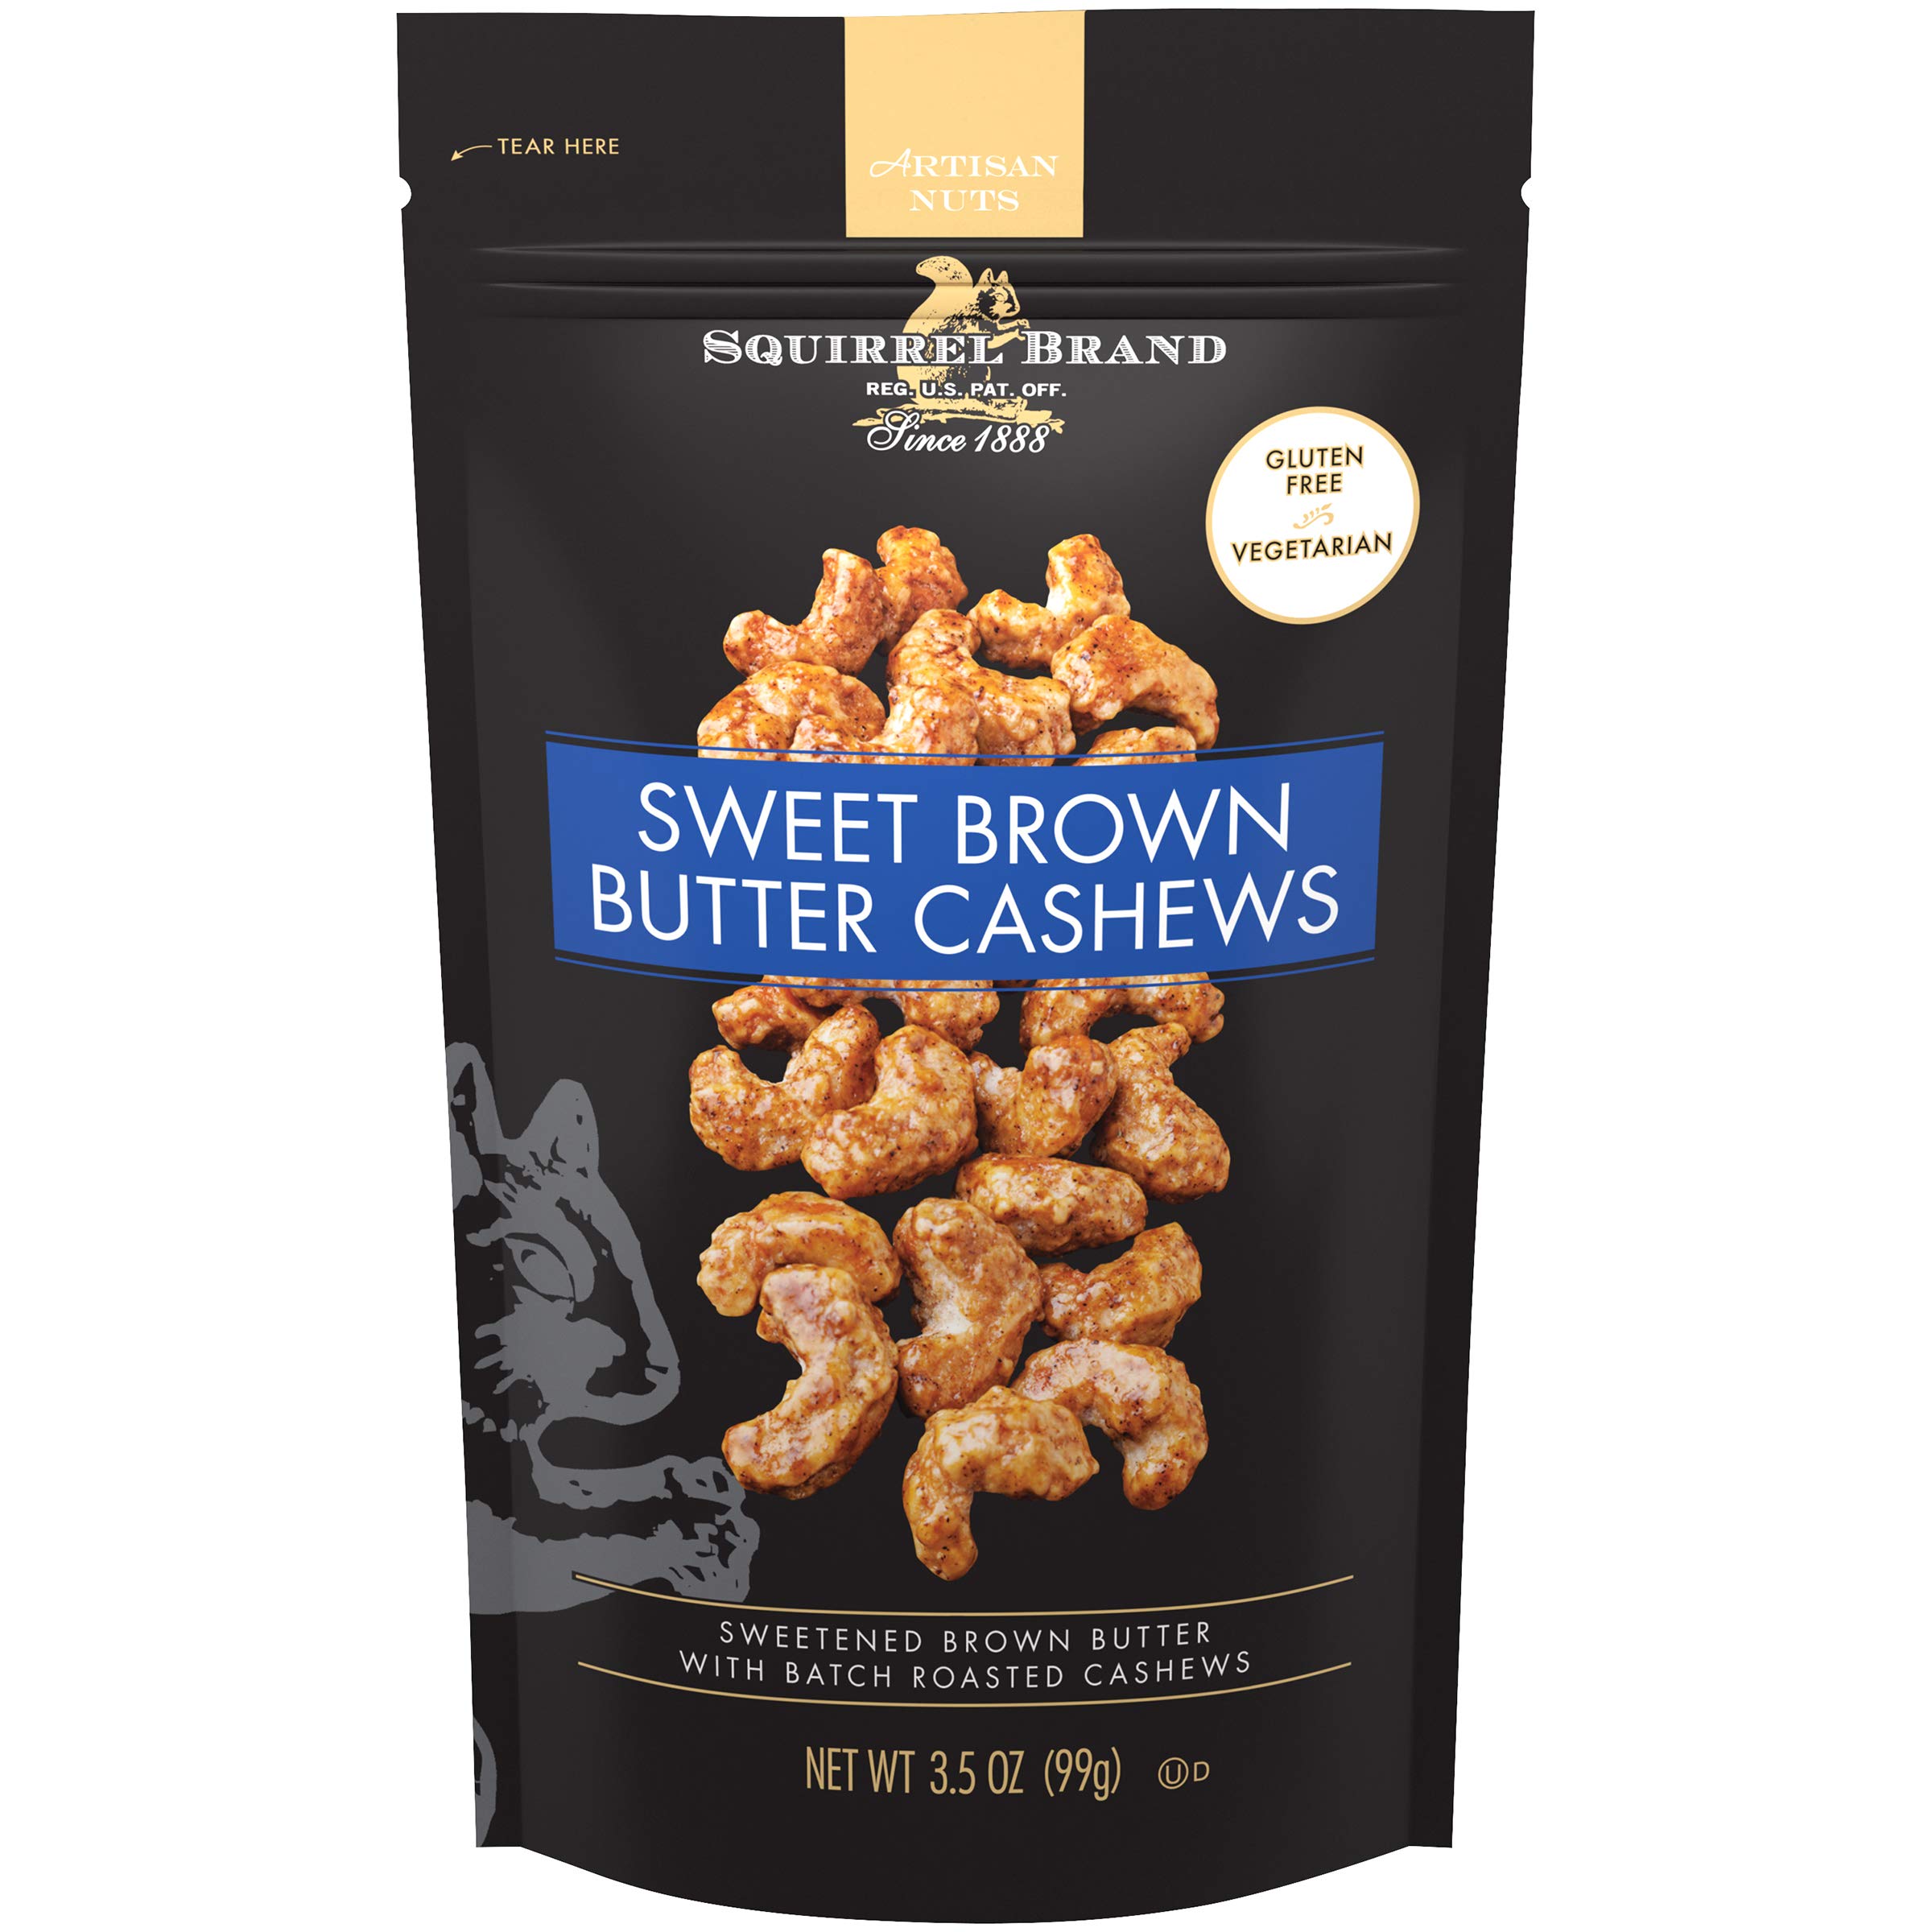 3.5oz. Squirrel Brand Sweet Brown Butter Cashews $2.74